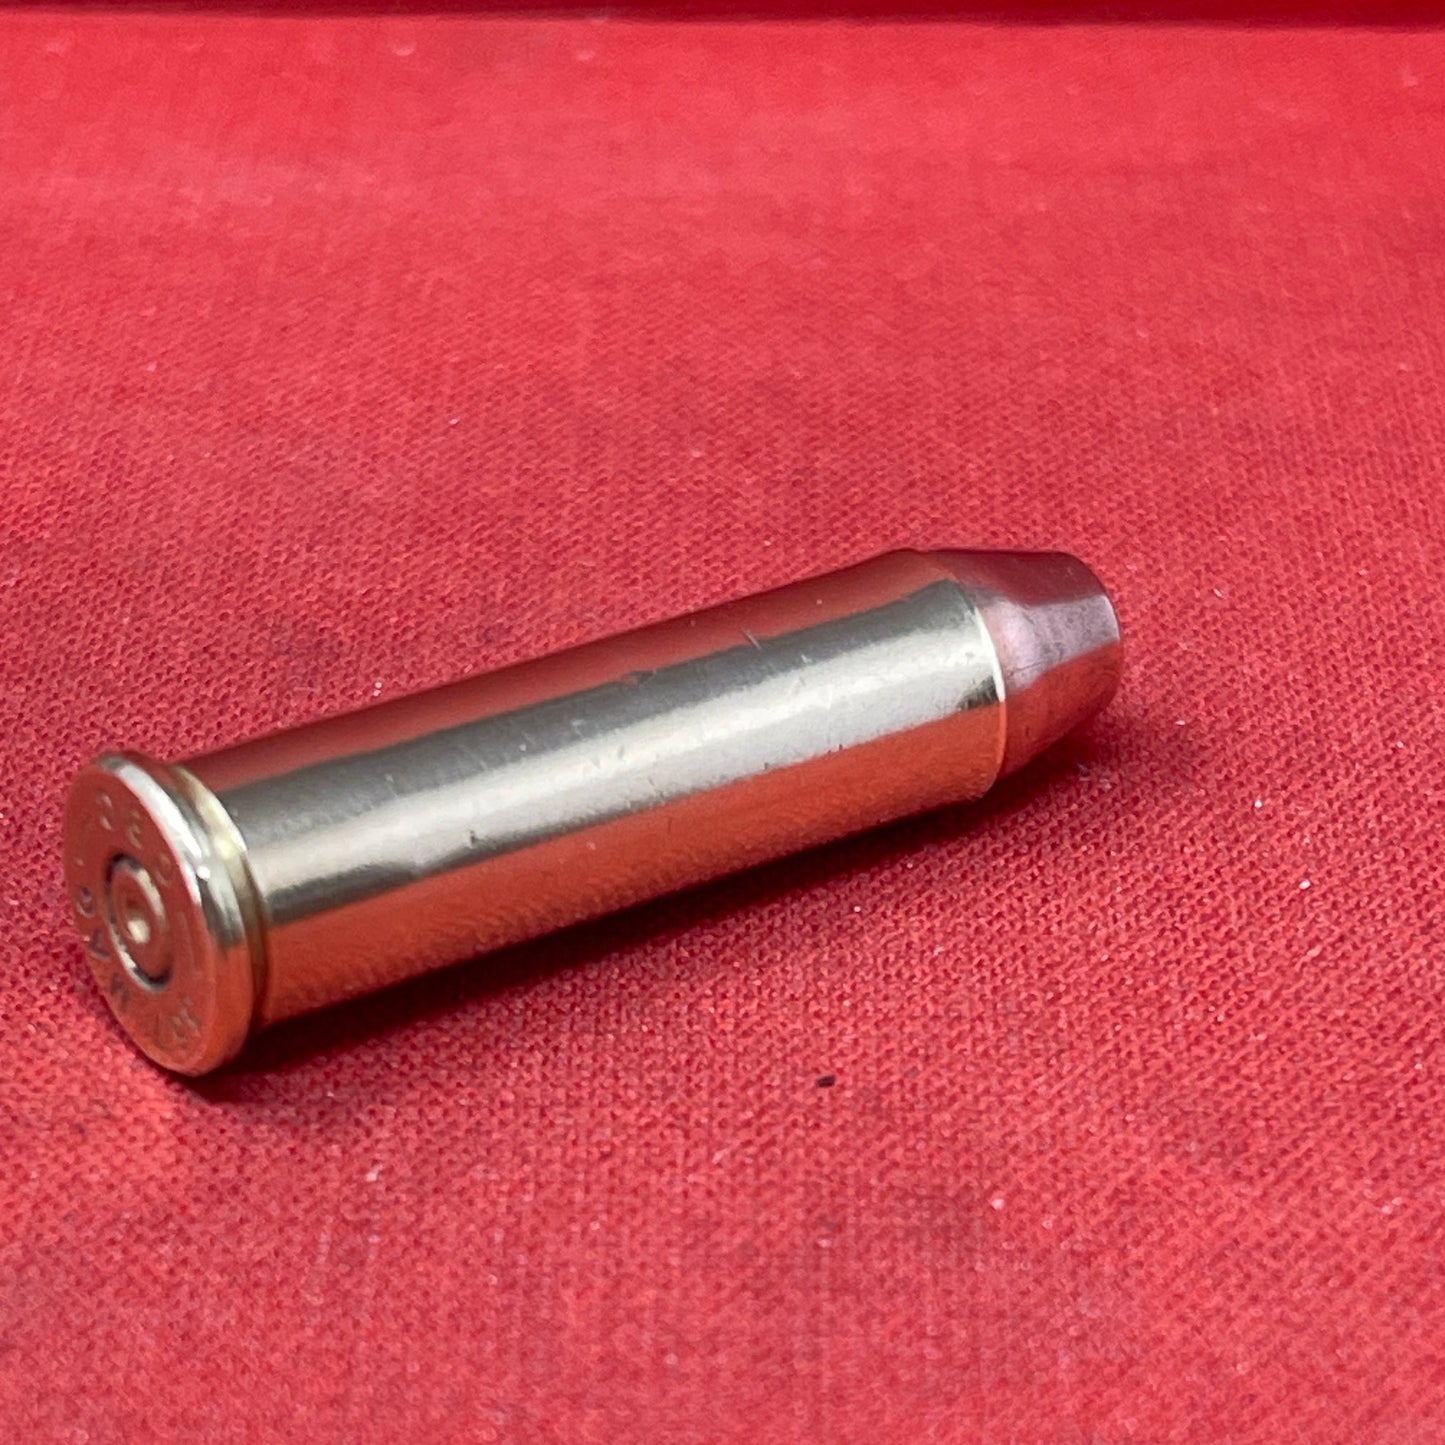 1 x 357 Magnum INERT Cartridge and Case